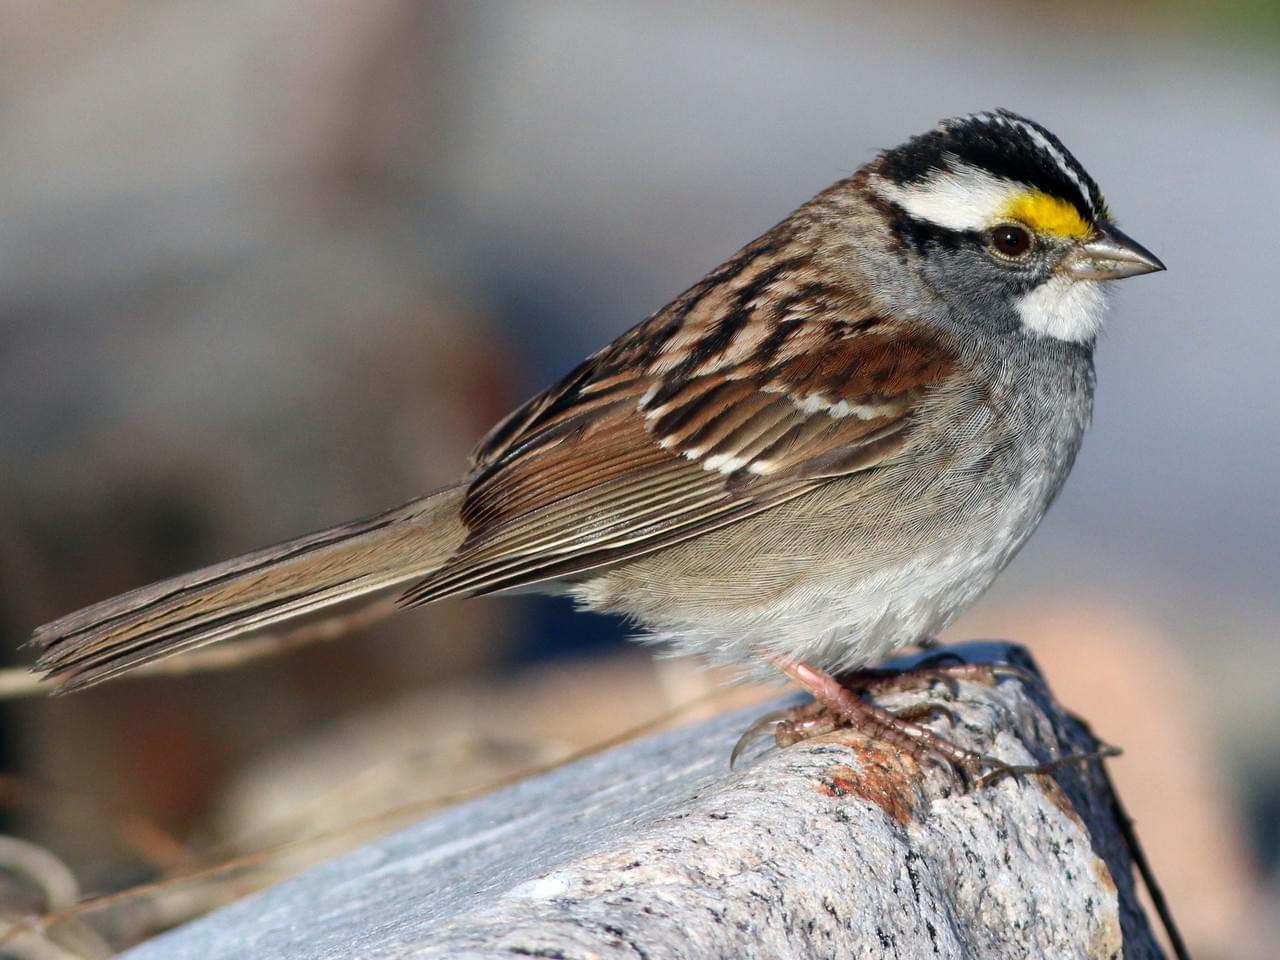 渡り鳥の鳴き声が年間で変化していた 鳥もバズりを気にするのかも 北米 ナゾロジー